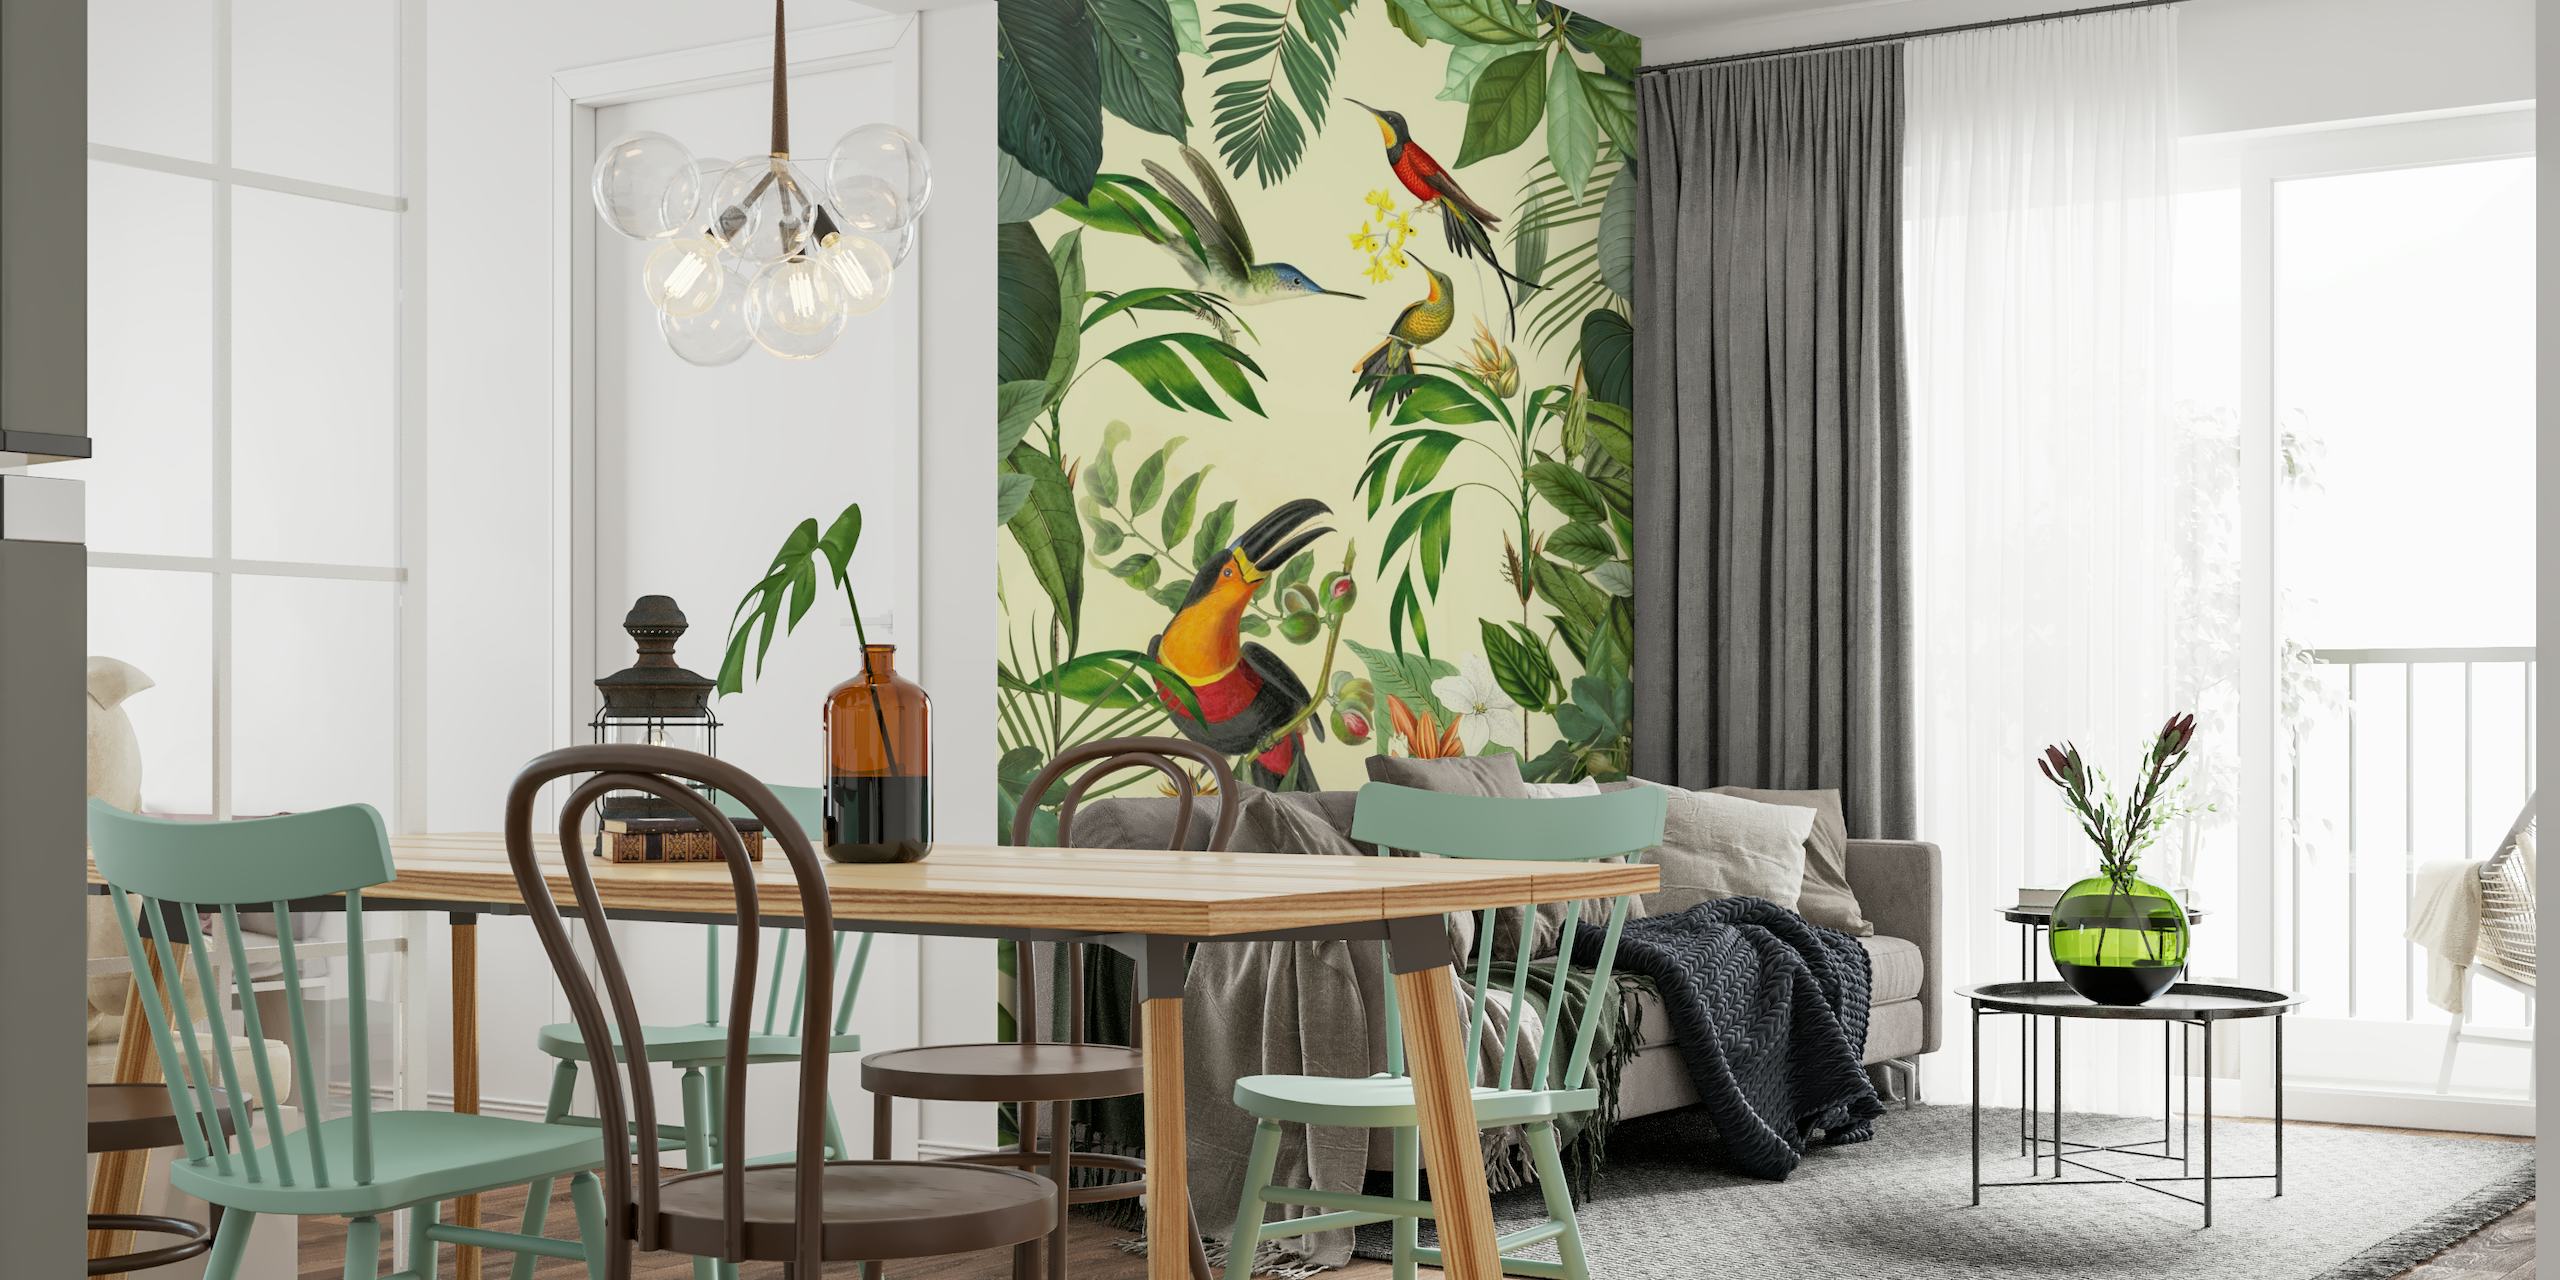 Trooppinen tukaani- ja hummingbird-seinämaalaus, jossa näkyy eloisaa villieläimiä ja vehreää vehreyttä